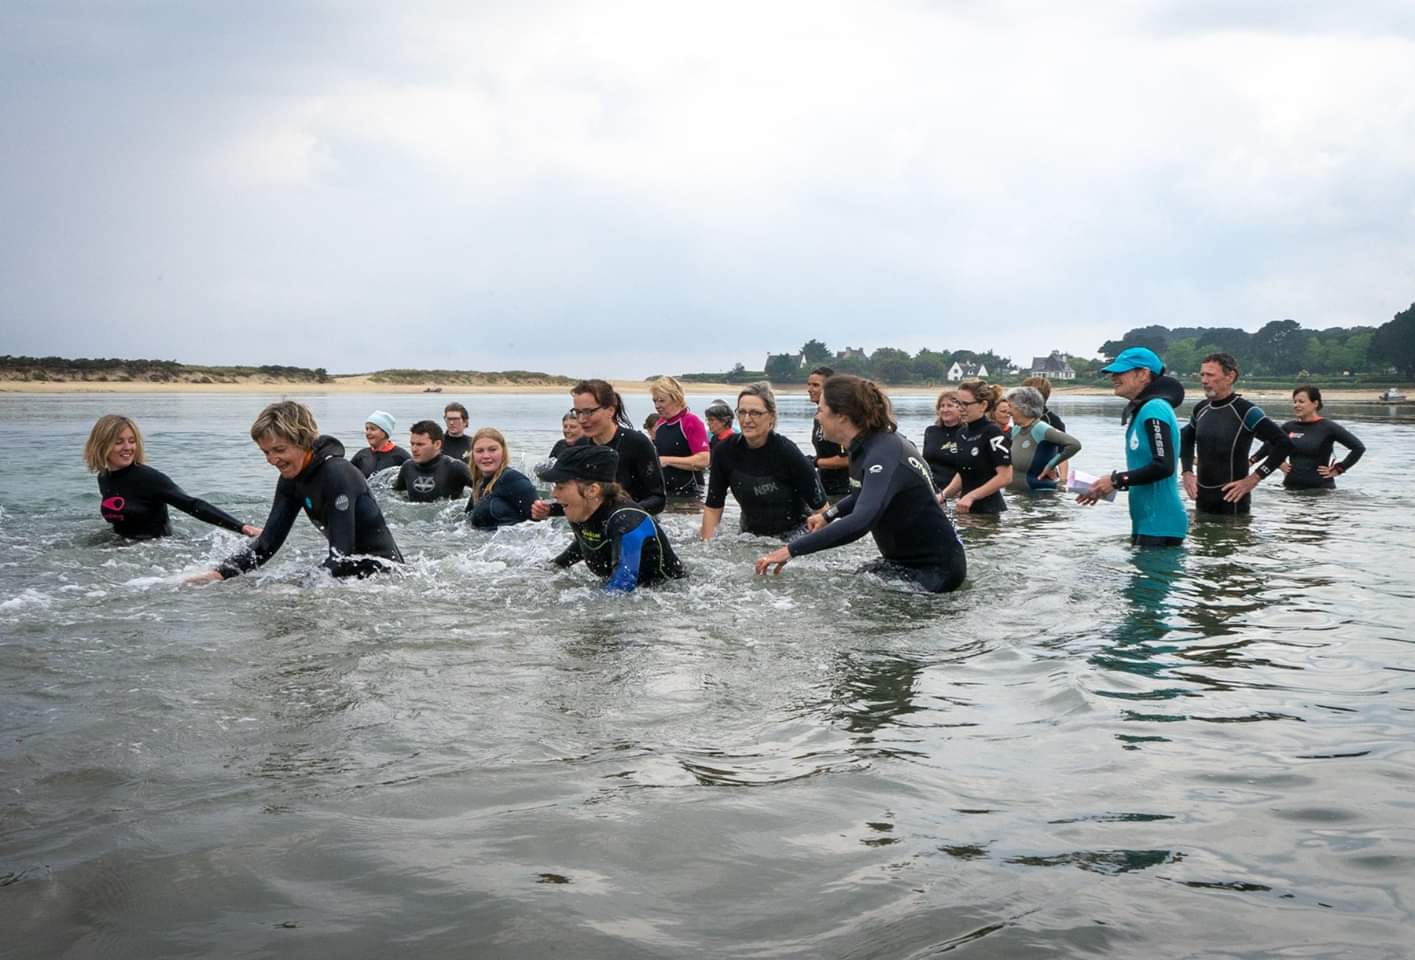 Austauschschüler und Schülerinnen mit Neoprenanzug im Wasser